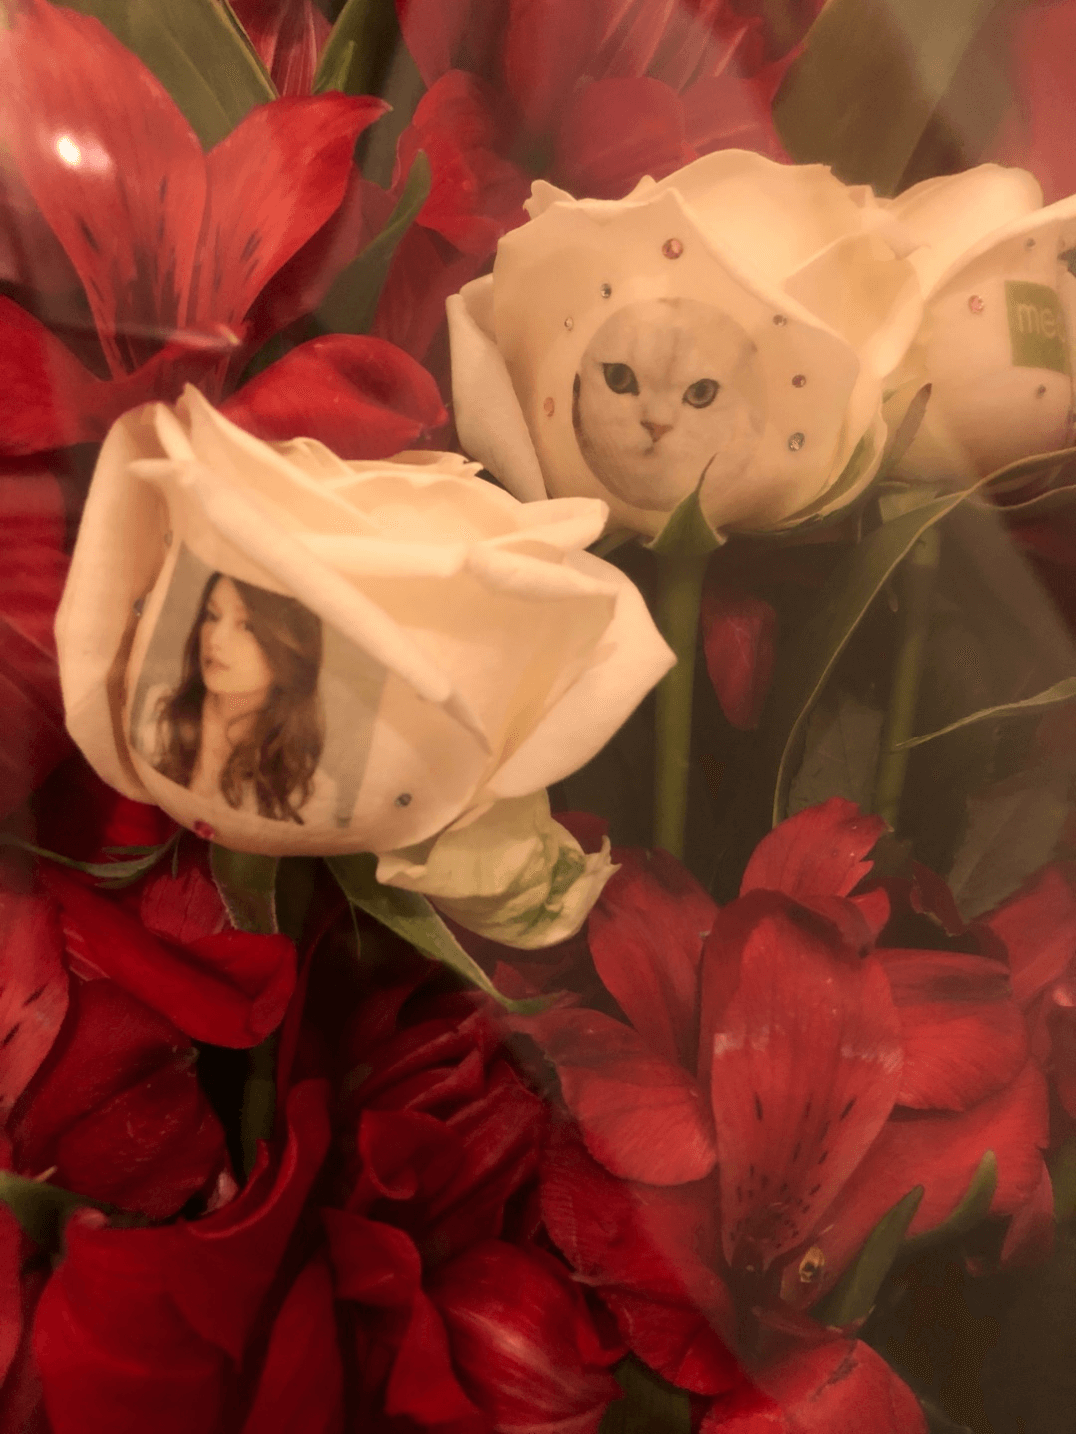 後藤真希、花束を抱えた満面の笑みショット公開で反響「お花より美人」「最高に可愛い」